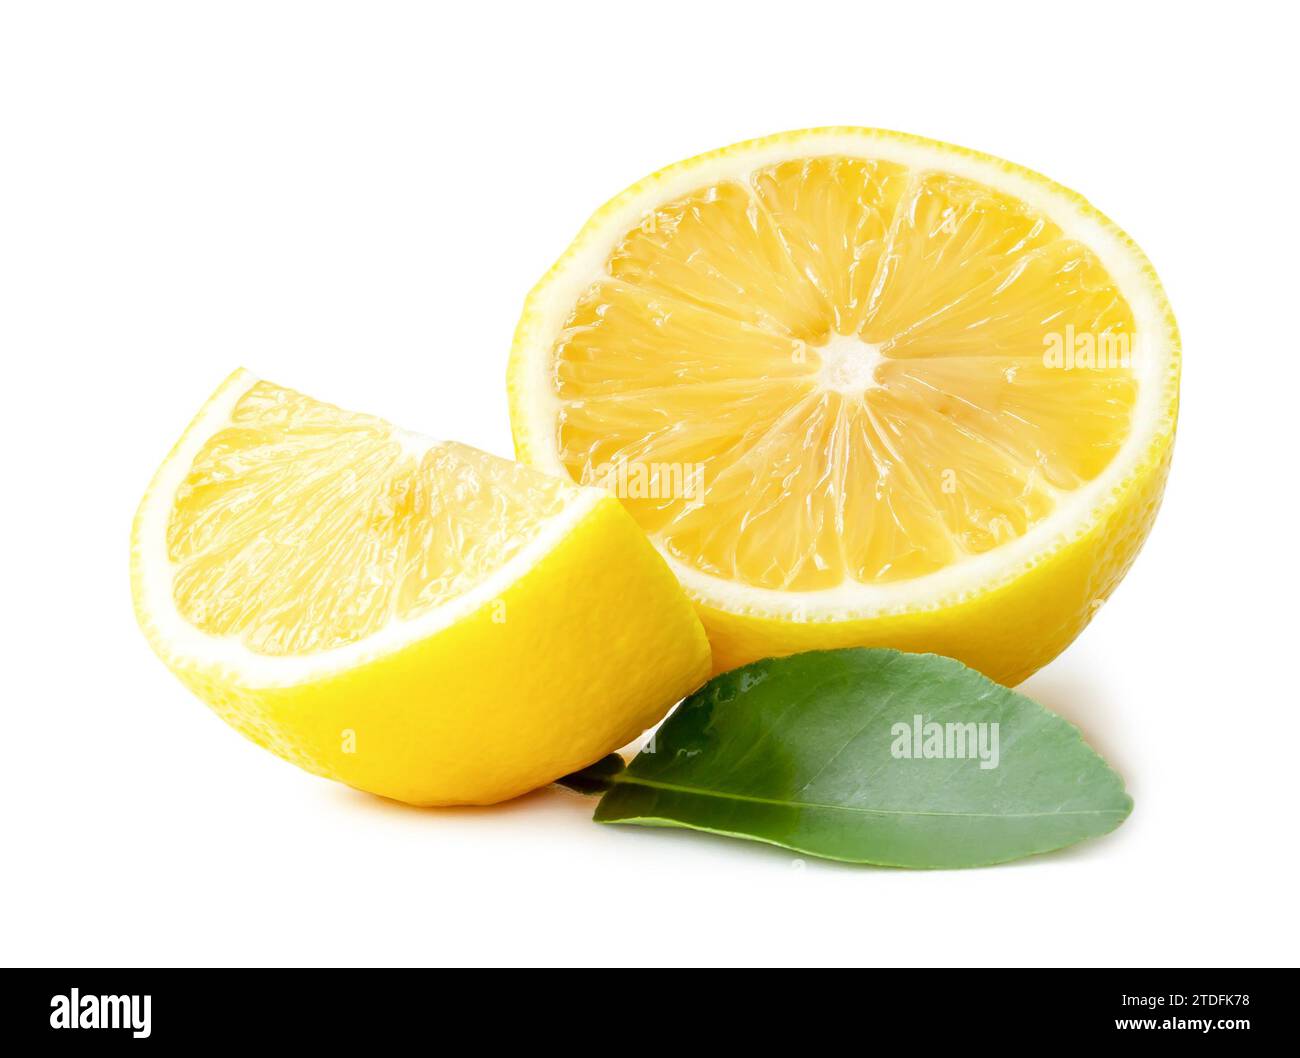 La metà fresca di limone giallo con quarto e foglie è isolata su sfondo bianco con percorso di ritaglio. Foto Stock